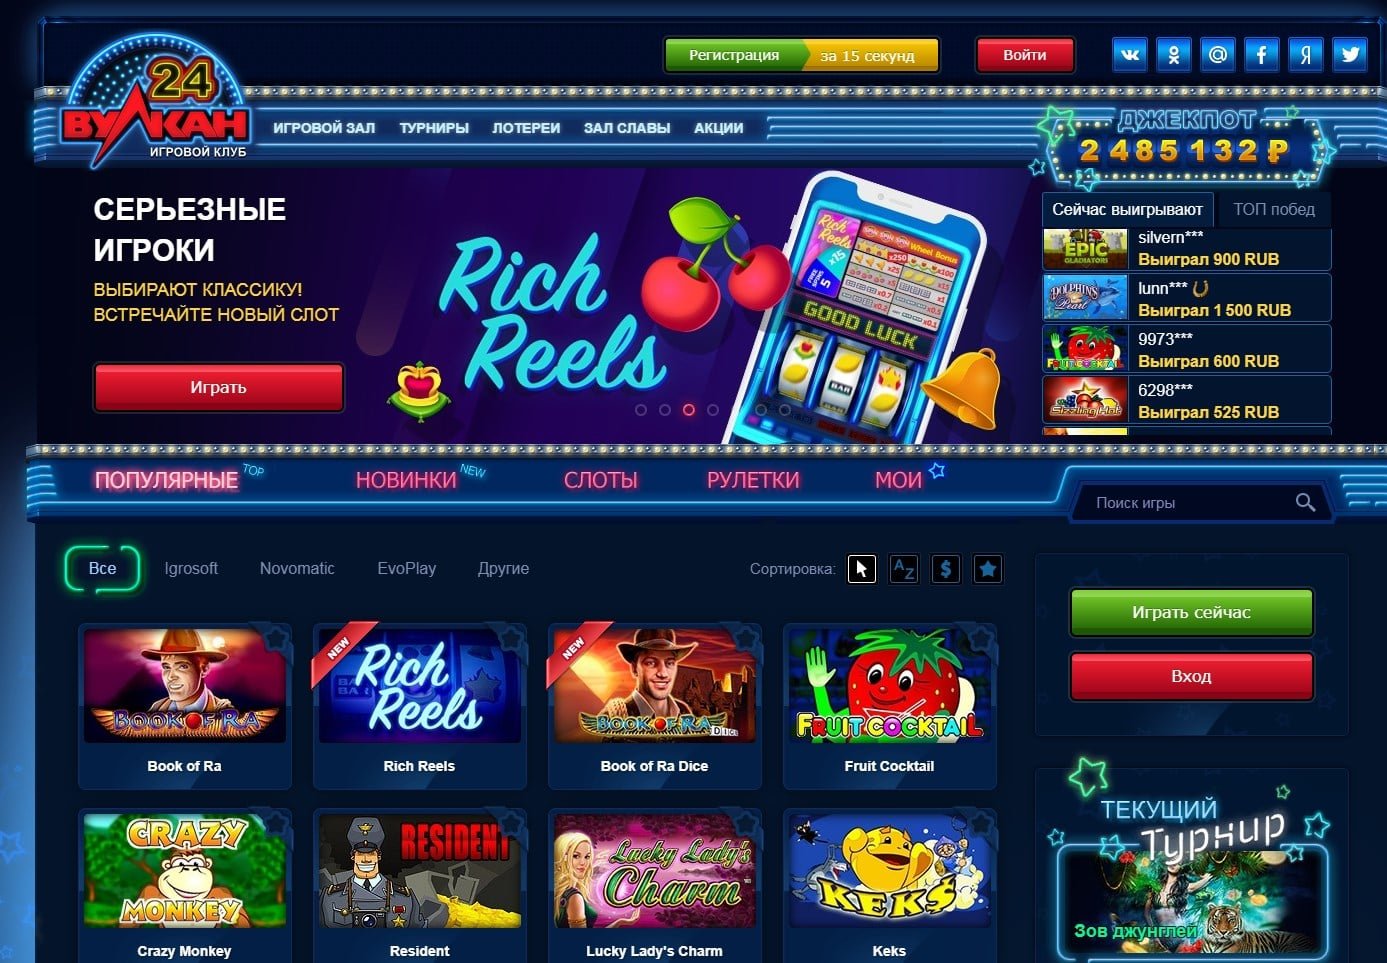 Вулкан интернет казино онлайн на реальные деньги casino vulcan info голдфишка 102 казино онлайн официальное играть